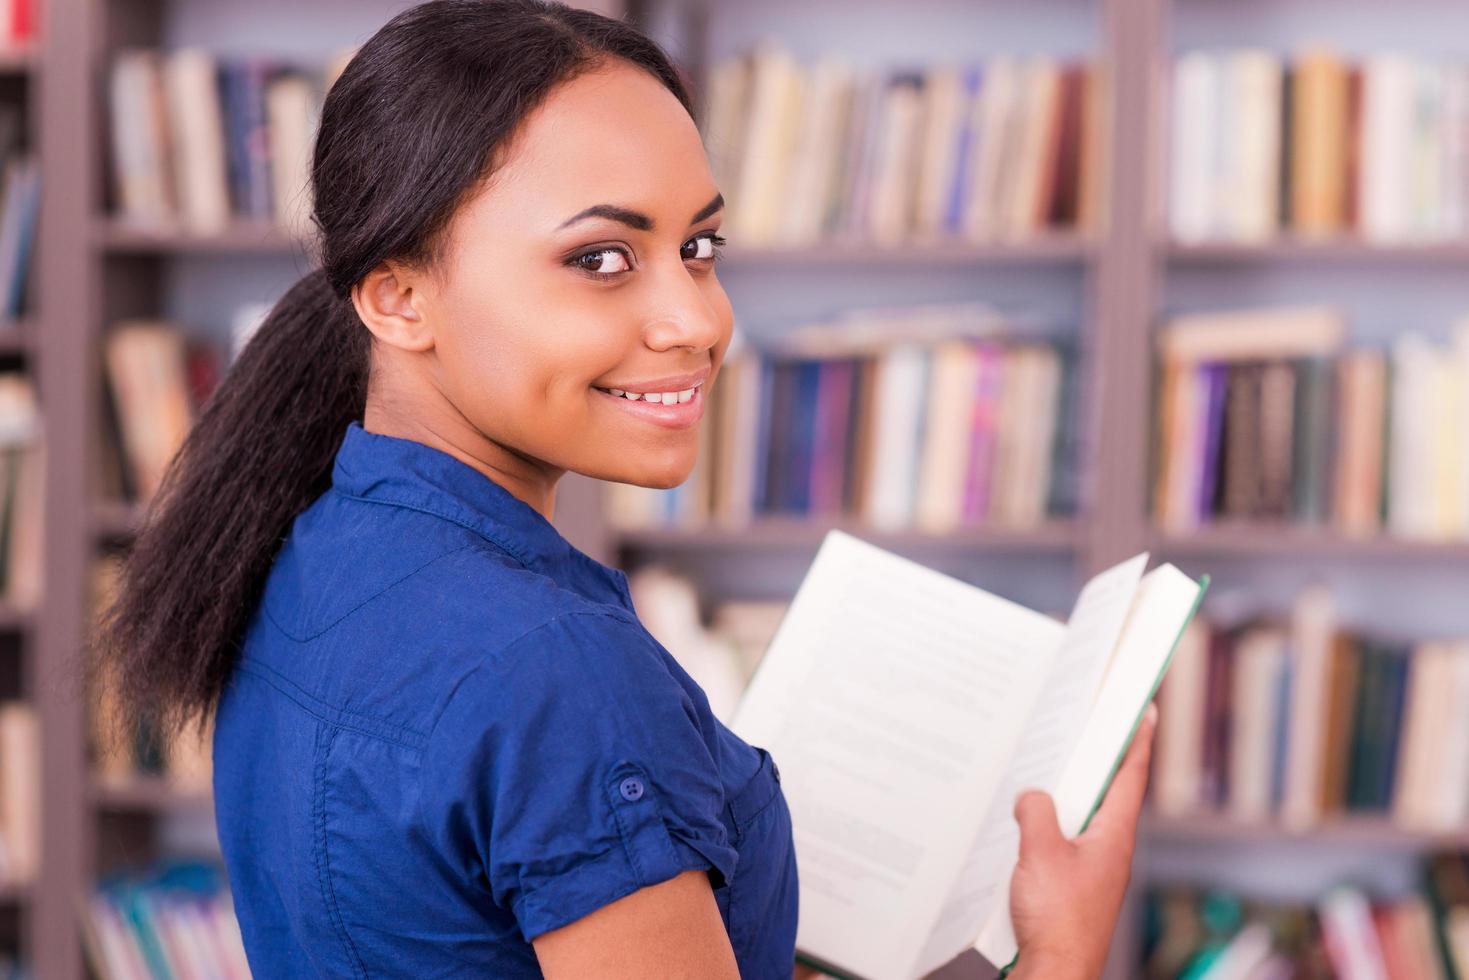 lezing haar favoriete boek. achterzijde visie van mooi Afrikaanse vrouw leerling Holding een boek en op zoek over- schouder met glimlach terwijl staand in bibliotheek foto